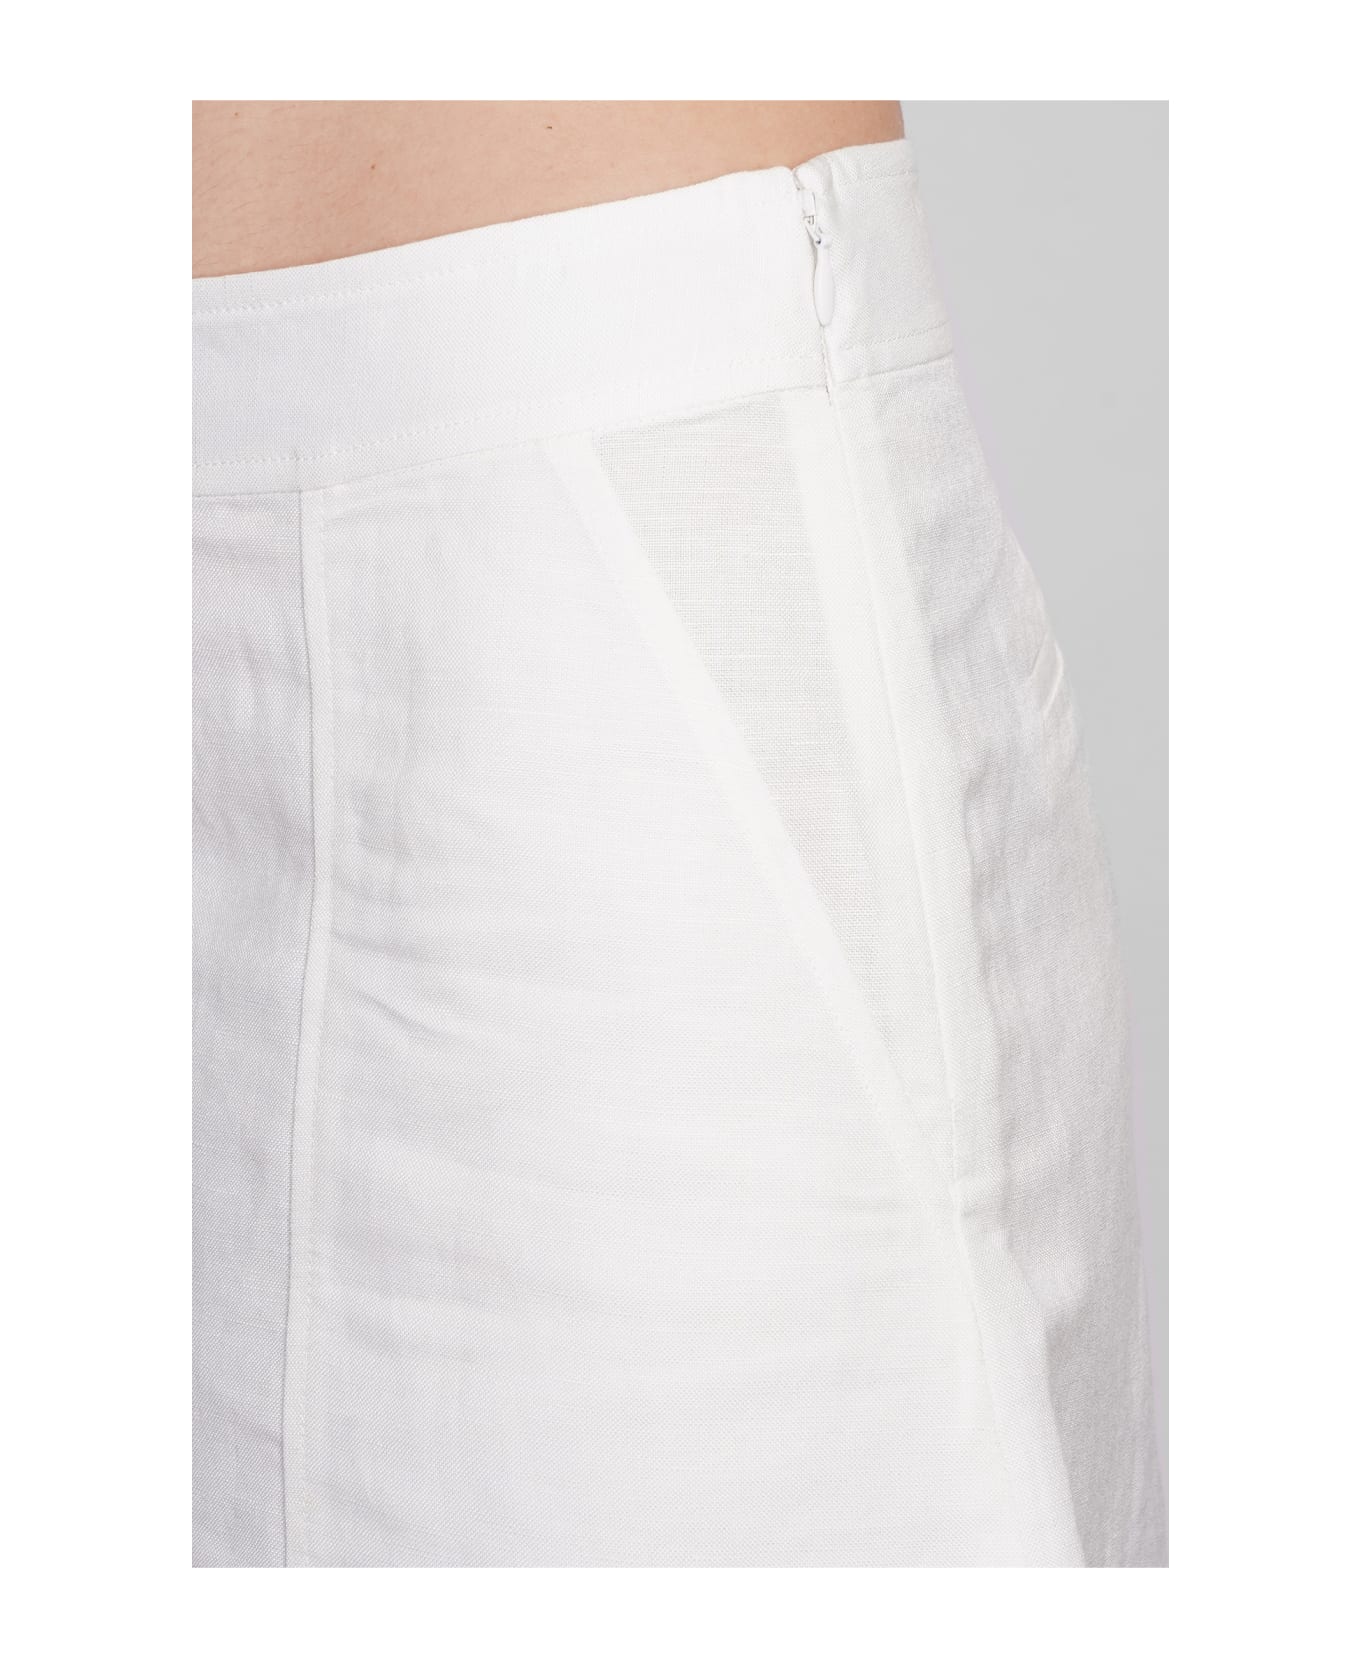 Simkhai Dax Shorts In White Linen - white ショートパンツ